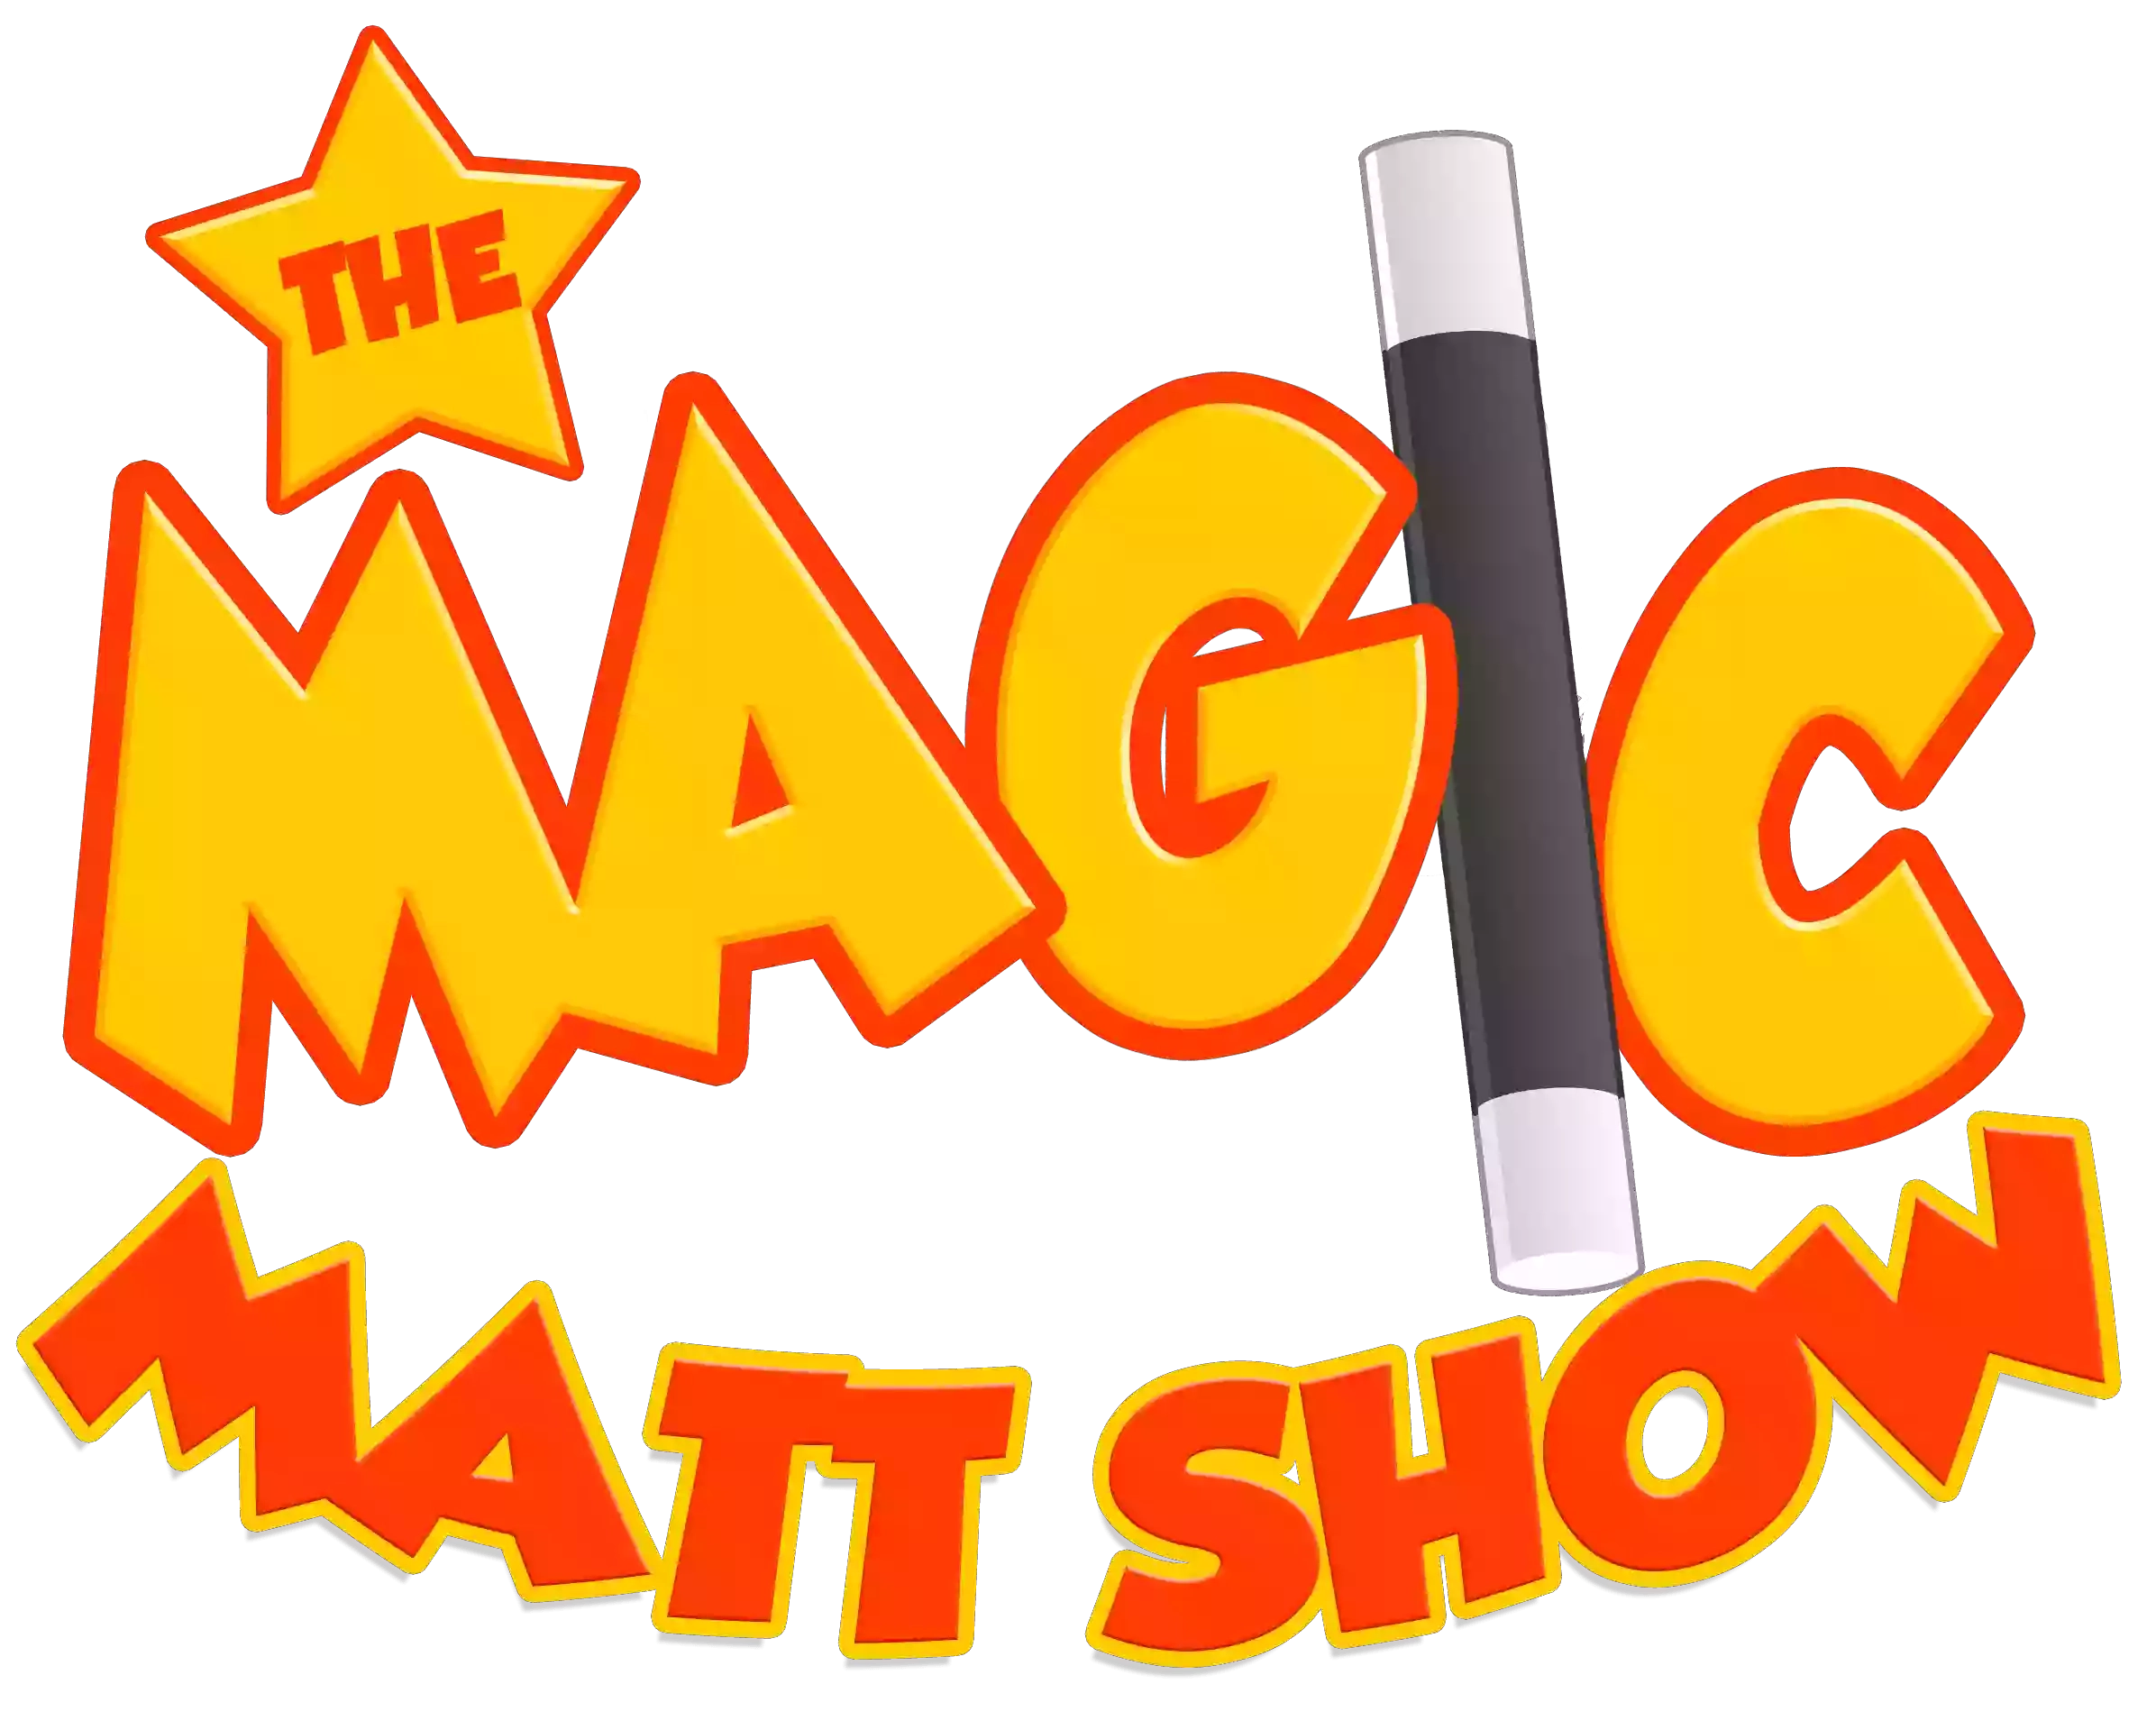 The Magic Matt Show | Children Entertainer & Magician